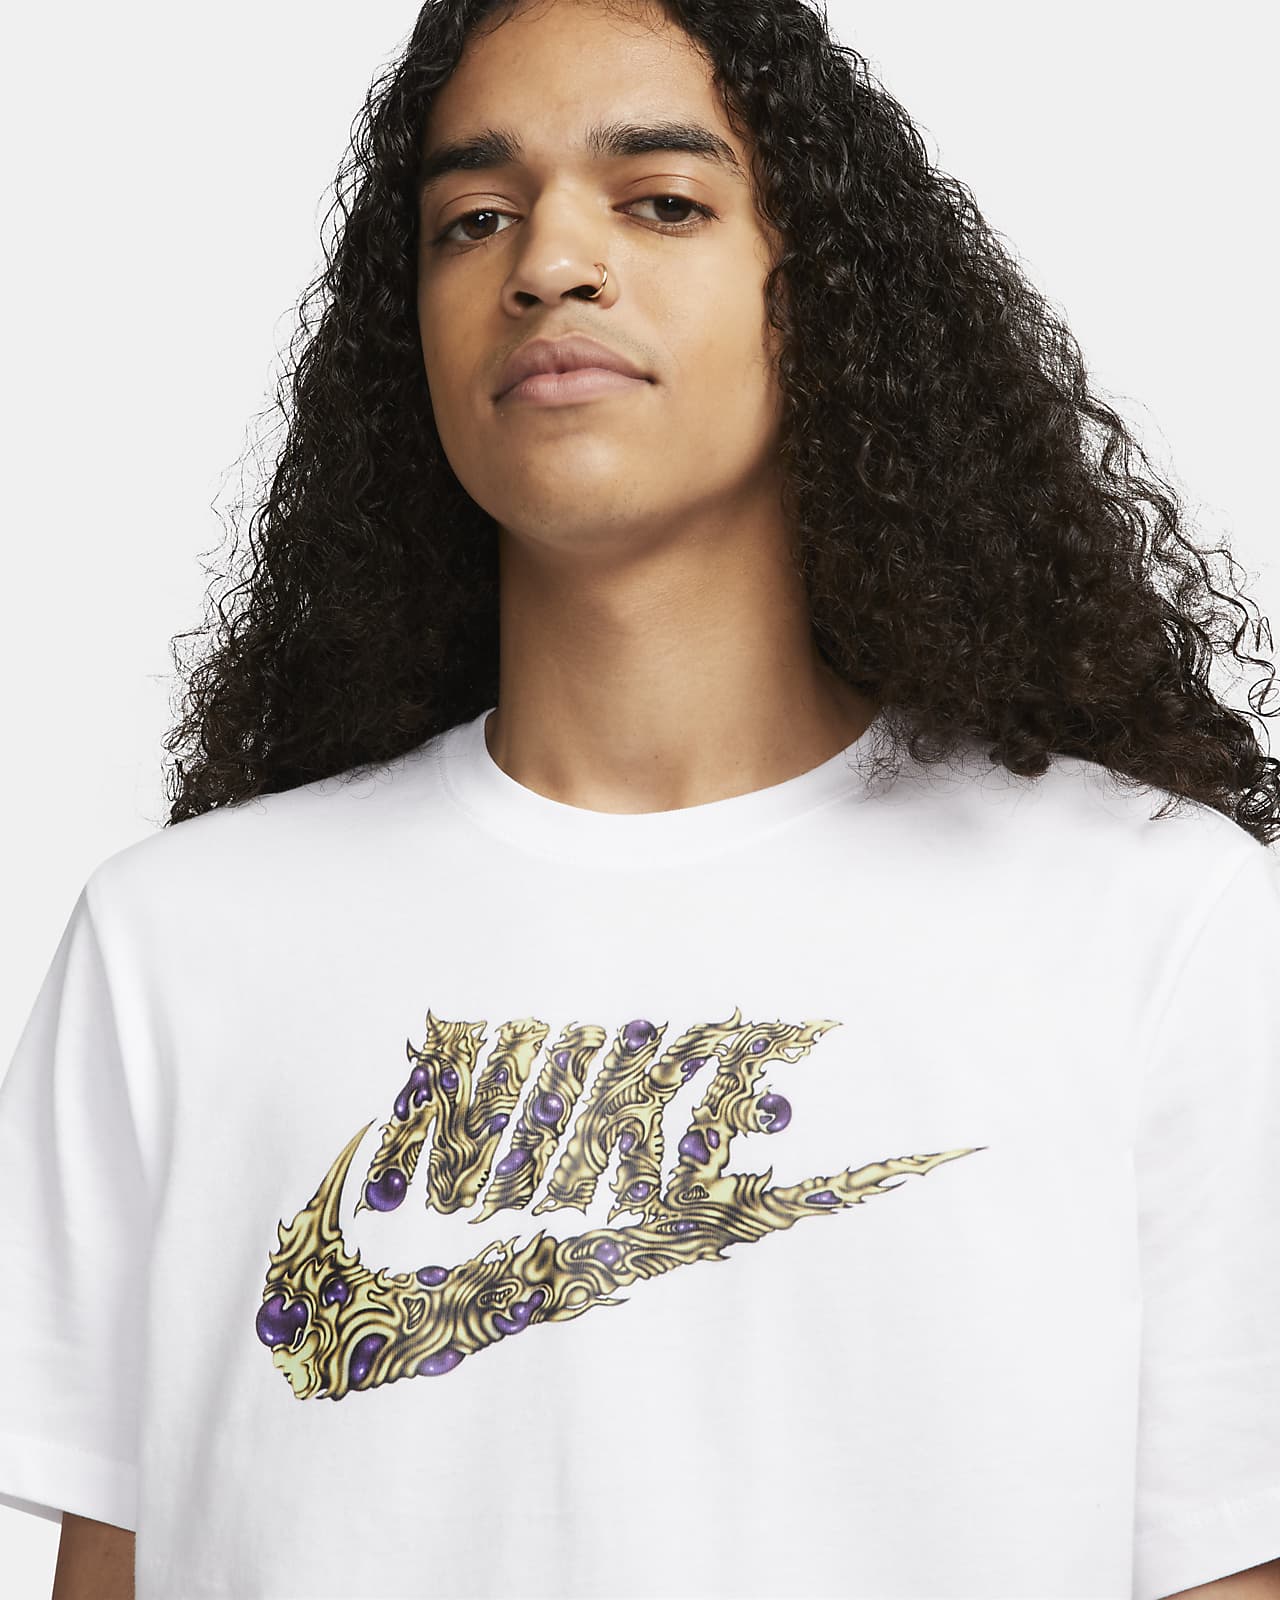 Nike Men\'s T-Shirt. Sportswear